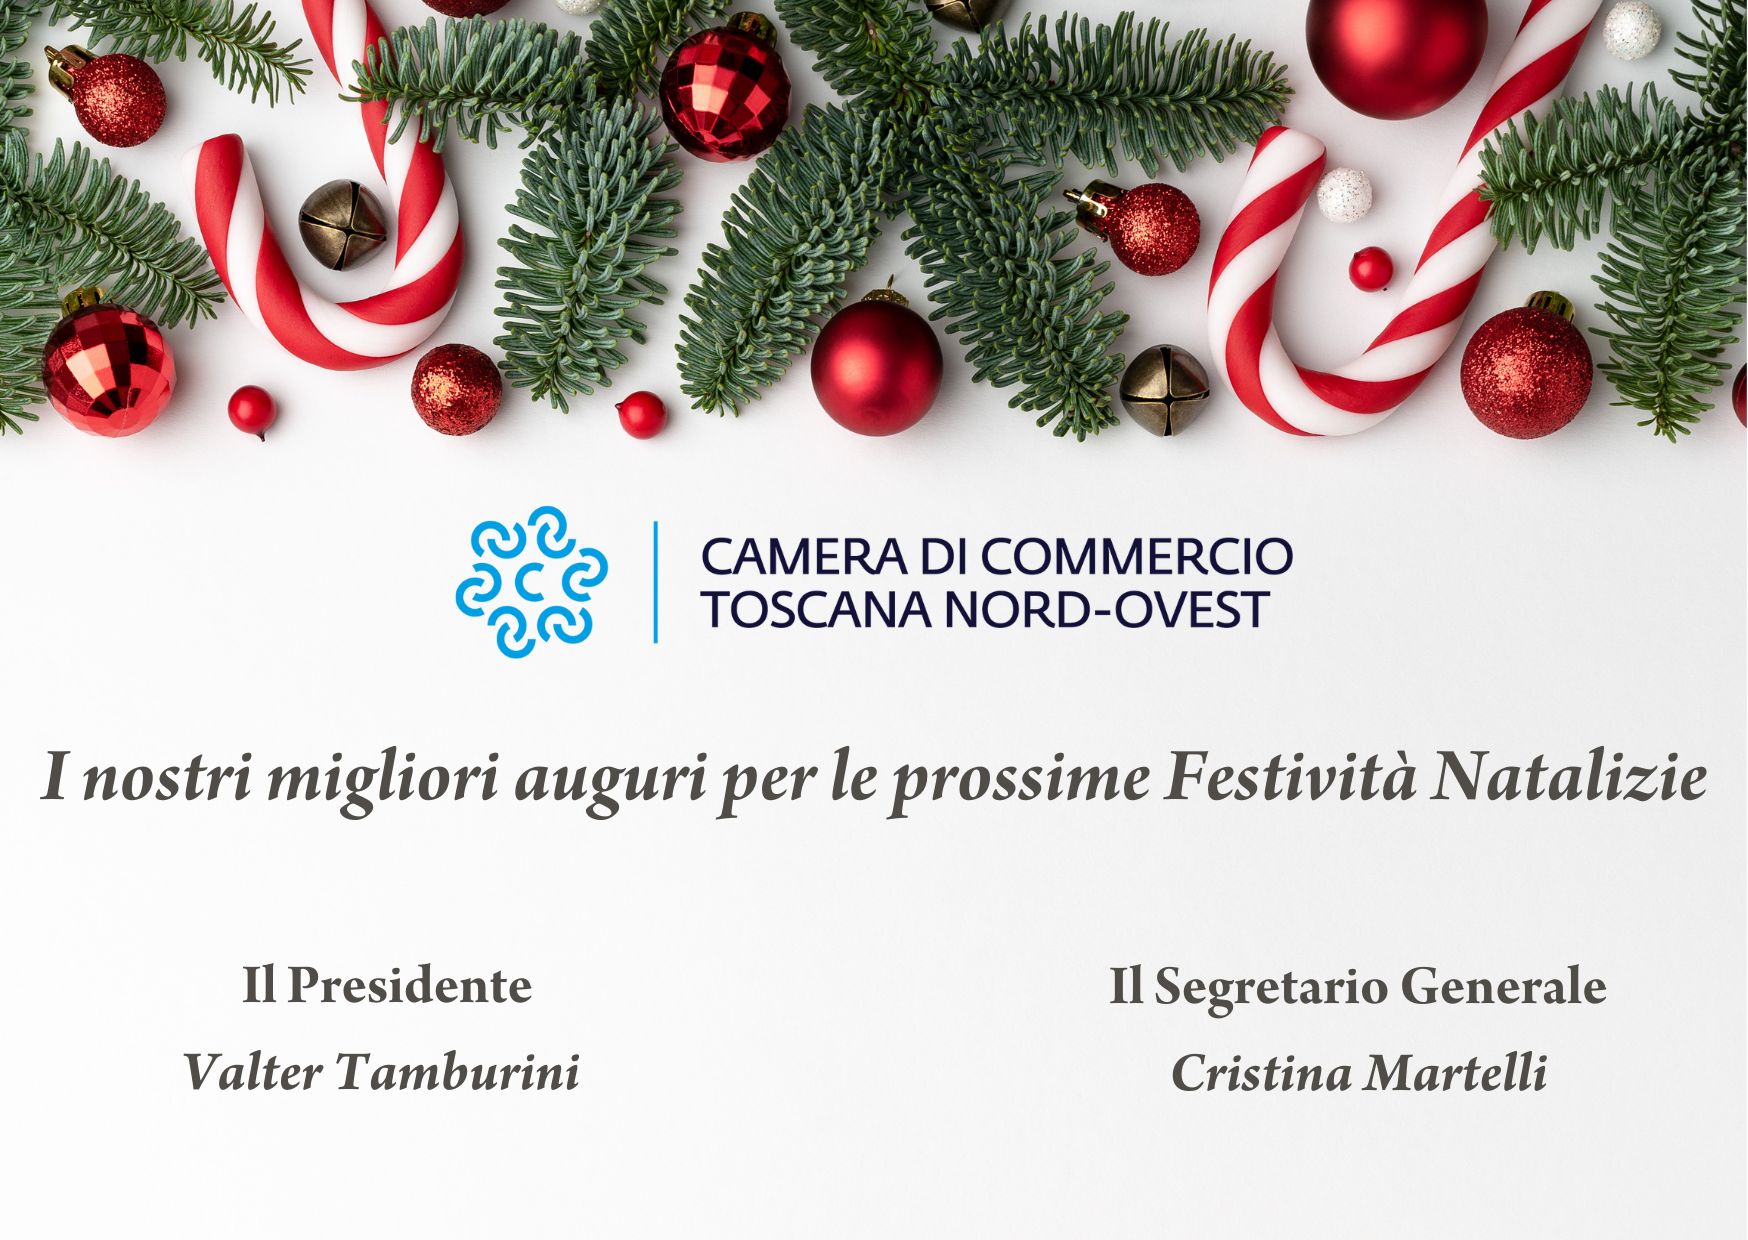 Auguri festività natalizie 2022 Camera di Commercio Toscana Nord-Ovest